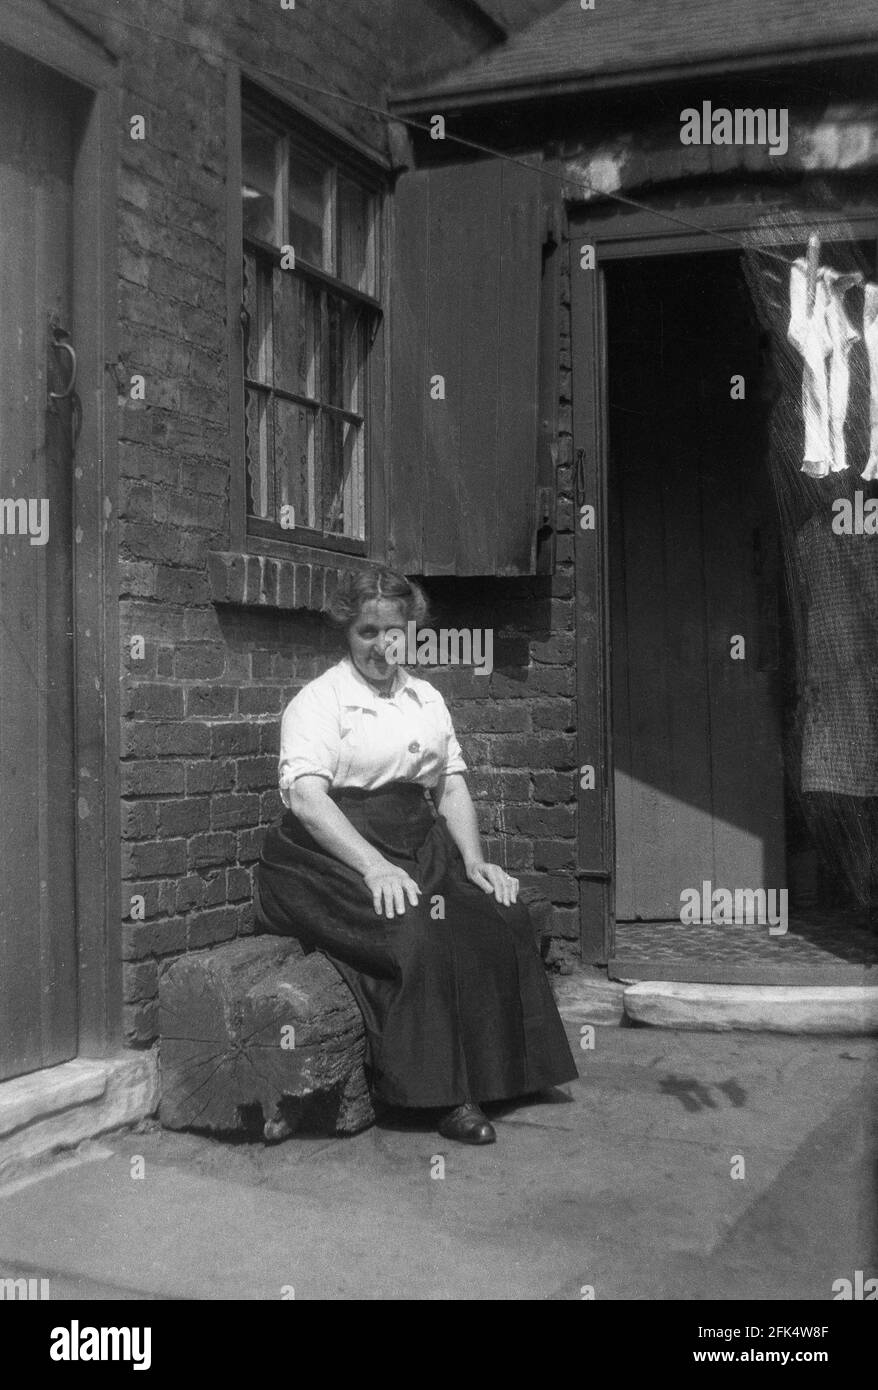 In una giornata di sole brillante, una signora che indossa una lunga gonna di stoffa pesante, tipica dell'epoca, seduta su una piccola panchina di tronchi, nel cortile chiuso di una proprietà vittoriana, Cleethorpes, Inghilterra, Regno Unito, intorno agli anni '30. Foto Stock